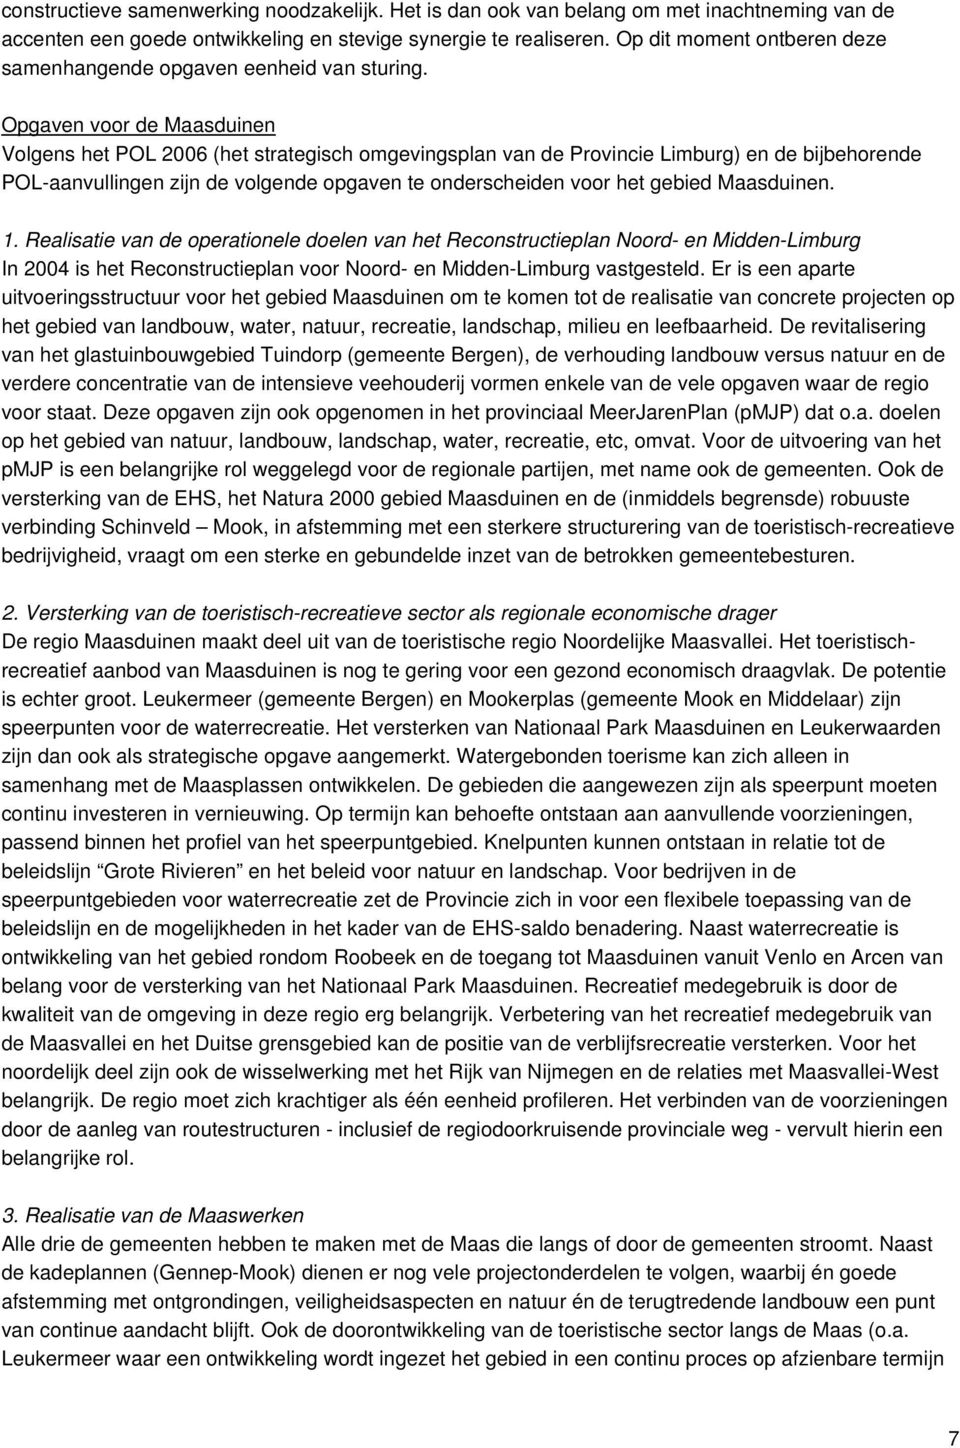 Opgaven voor de Maasduinen Volgens het POL 2006 (het strategisch omgevingsplan van de Provincie Limburg) en de bijbehorende POL-aanvullingen zijn de volgende opgaven te onderscheiden voor het gebied